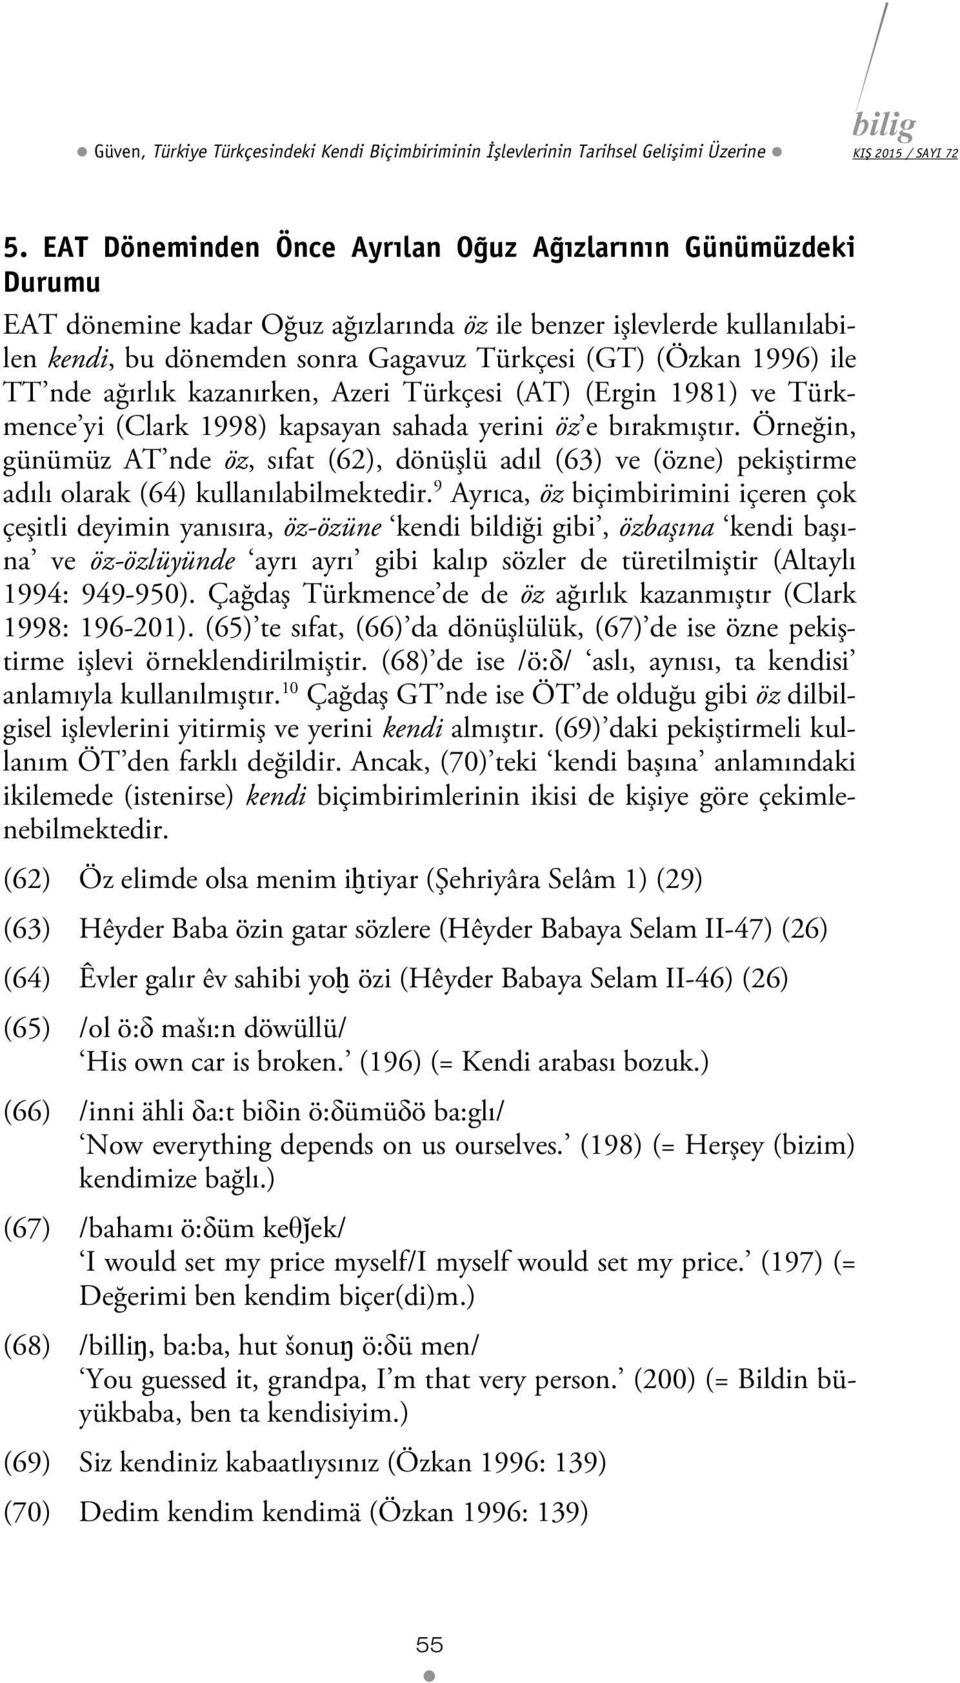 ile TT nde ağırlık kazanırken, Azeri Türkçesi (AT) (Ergin 1981) ve Türkmence yi (Clark 1998) kapsayan sahada yerini öz e bırakmıştır.